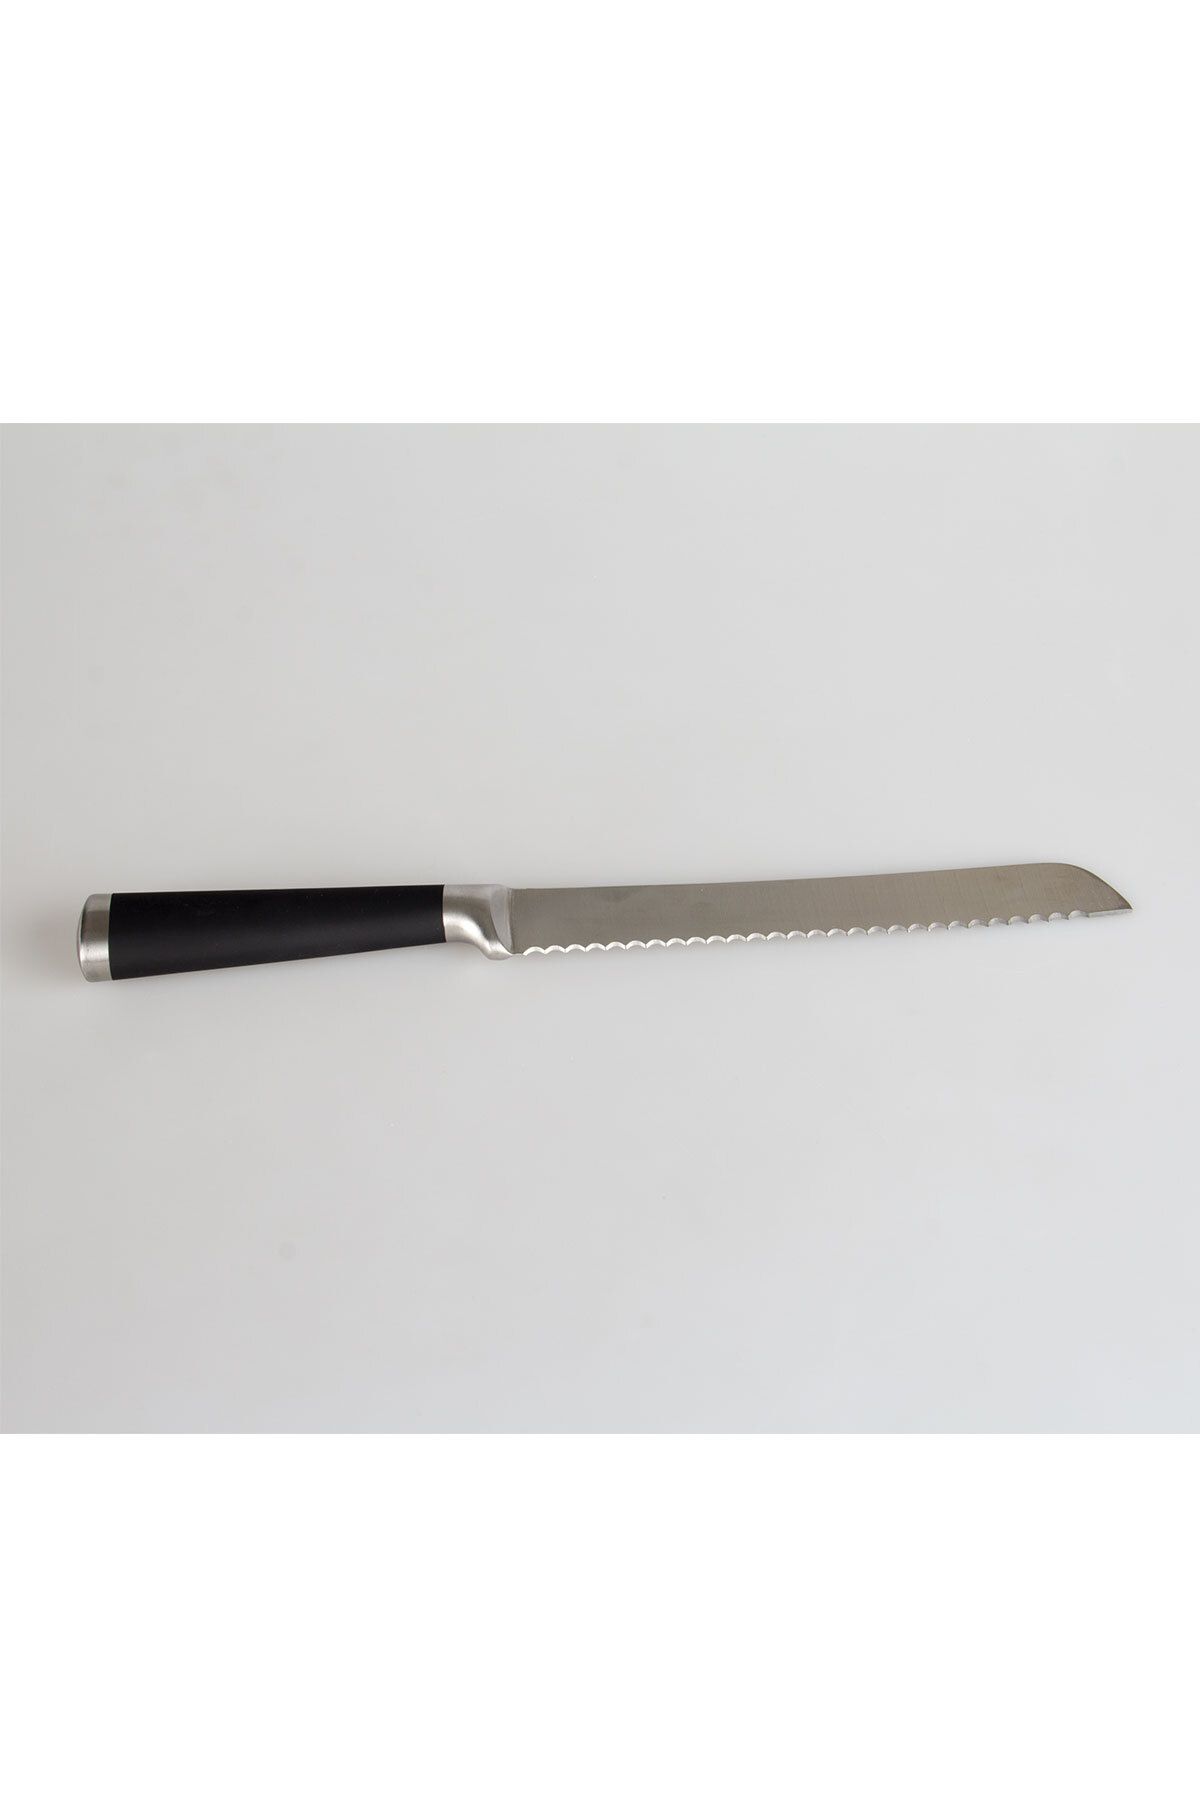 Fissler Ekmek Bıçağı 20 cm Siyah Saplı